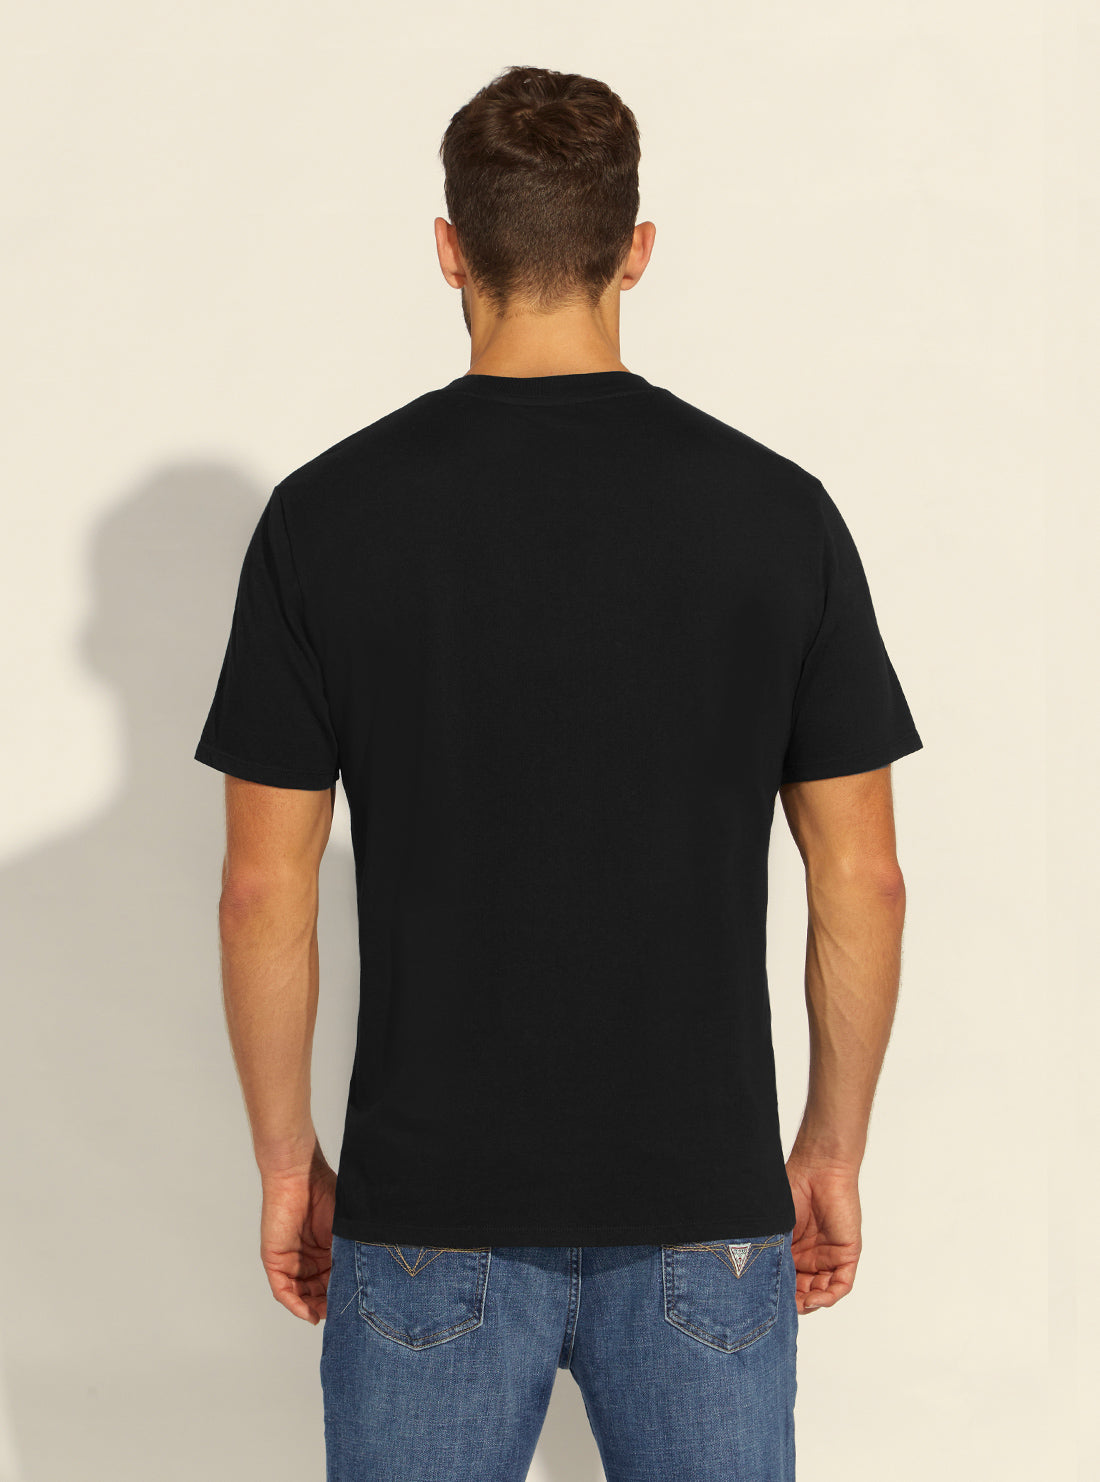 GUESS Mens Guess Originals Black Pocket Label T-Shirt M1BI43K9XF1 Model Back View